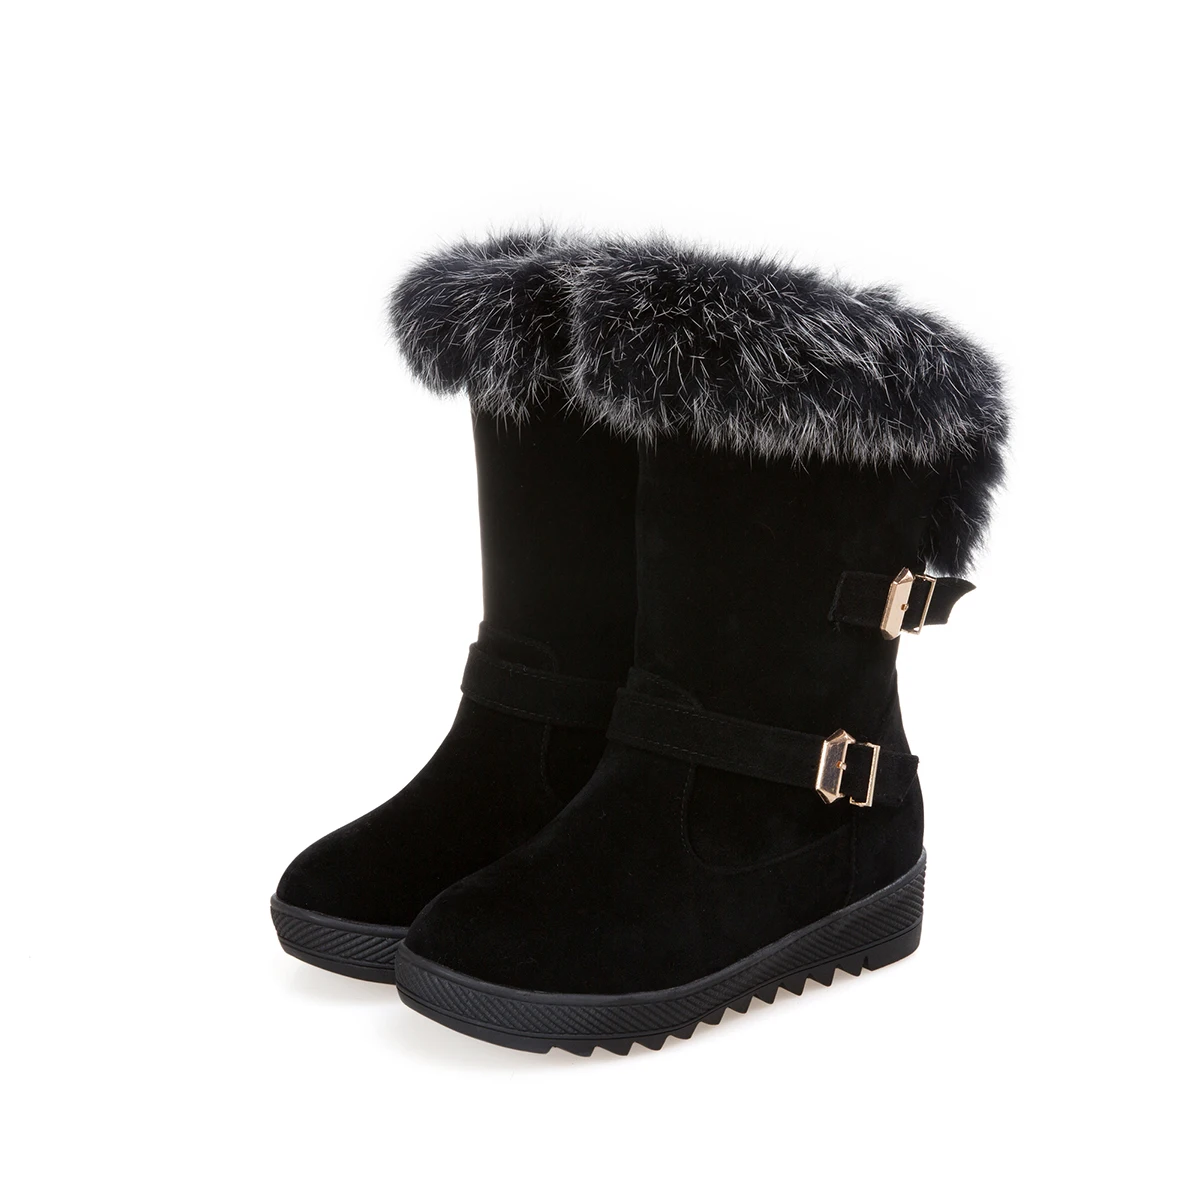 LDHZXC/Новинка года; женские зимние сапоги; сапоги на высоком каблуке; обувь на толстом меху для холодной зимы; высокие сапоги; женская обувь; большие размеры 11, 12 - Цвет: Черный